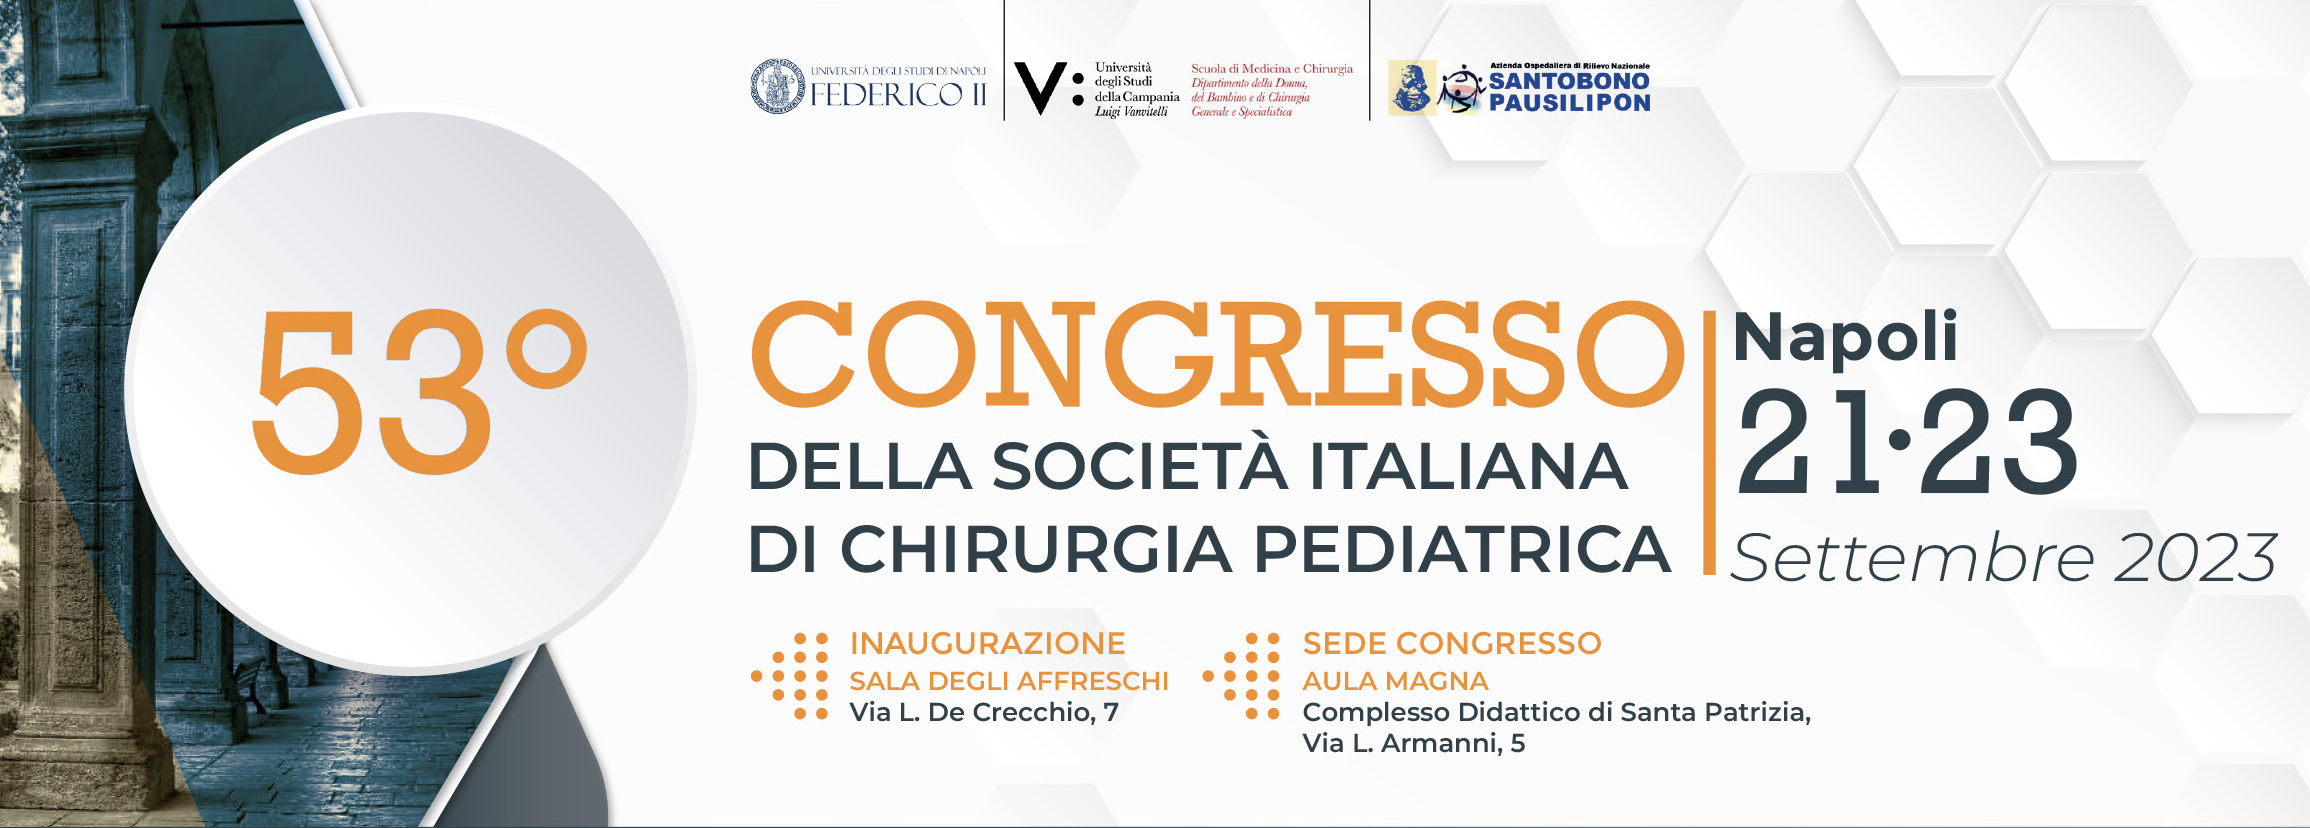 53° Congresso nazionale della Socità Italiana di Chirurgia Pediatrica - Info per partecipare